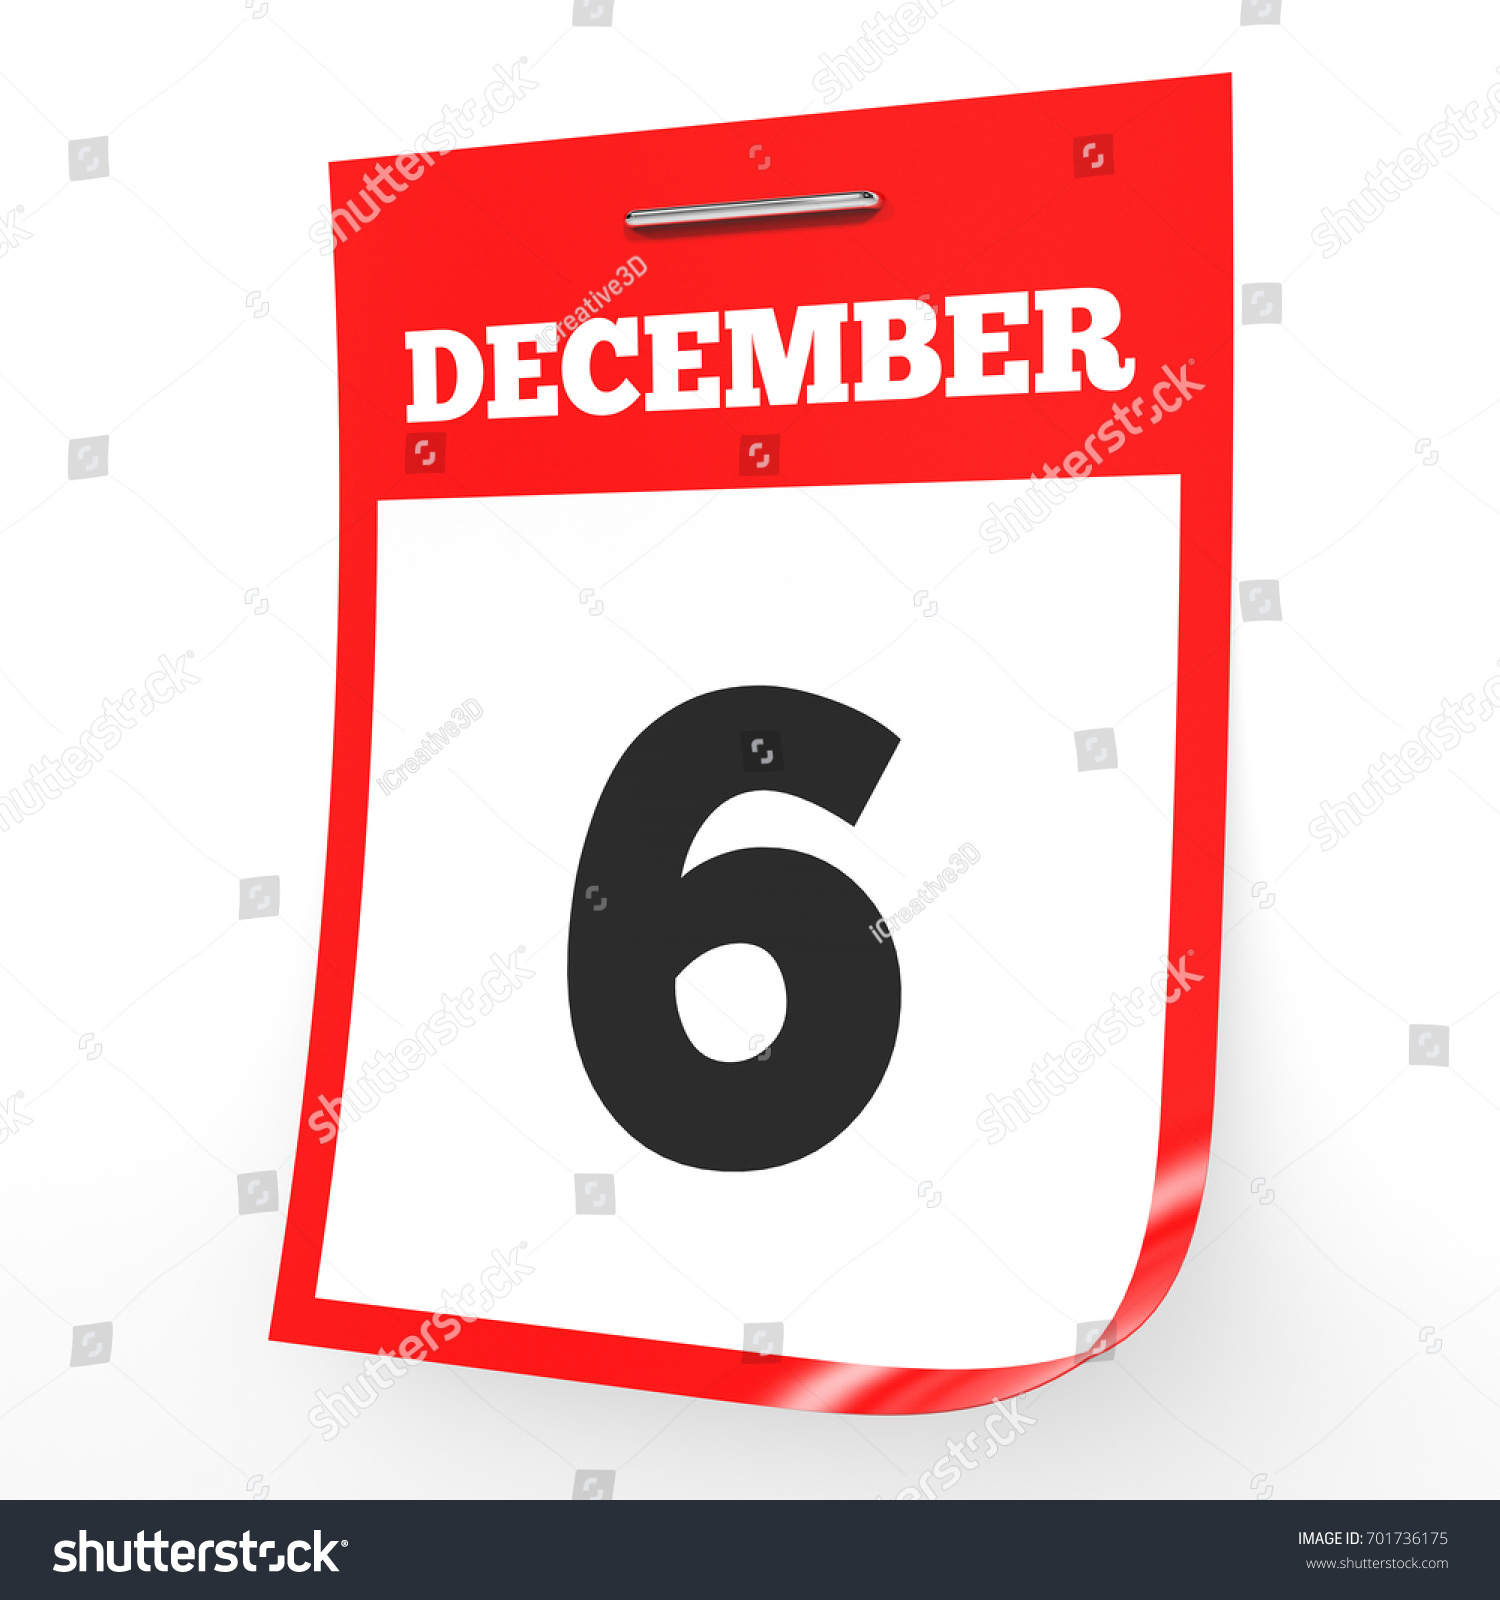 December 6 Calendar On White Background Stock Illustration 701736175